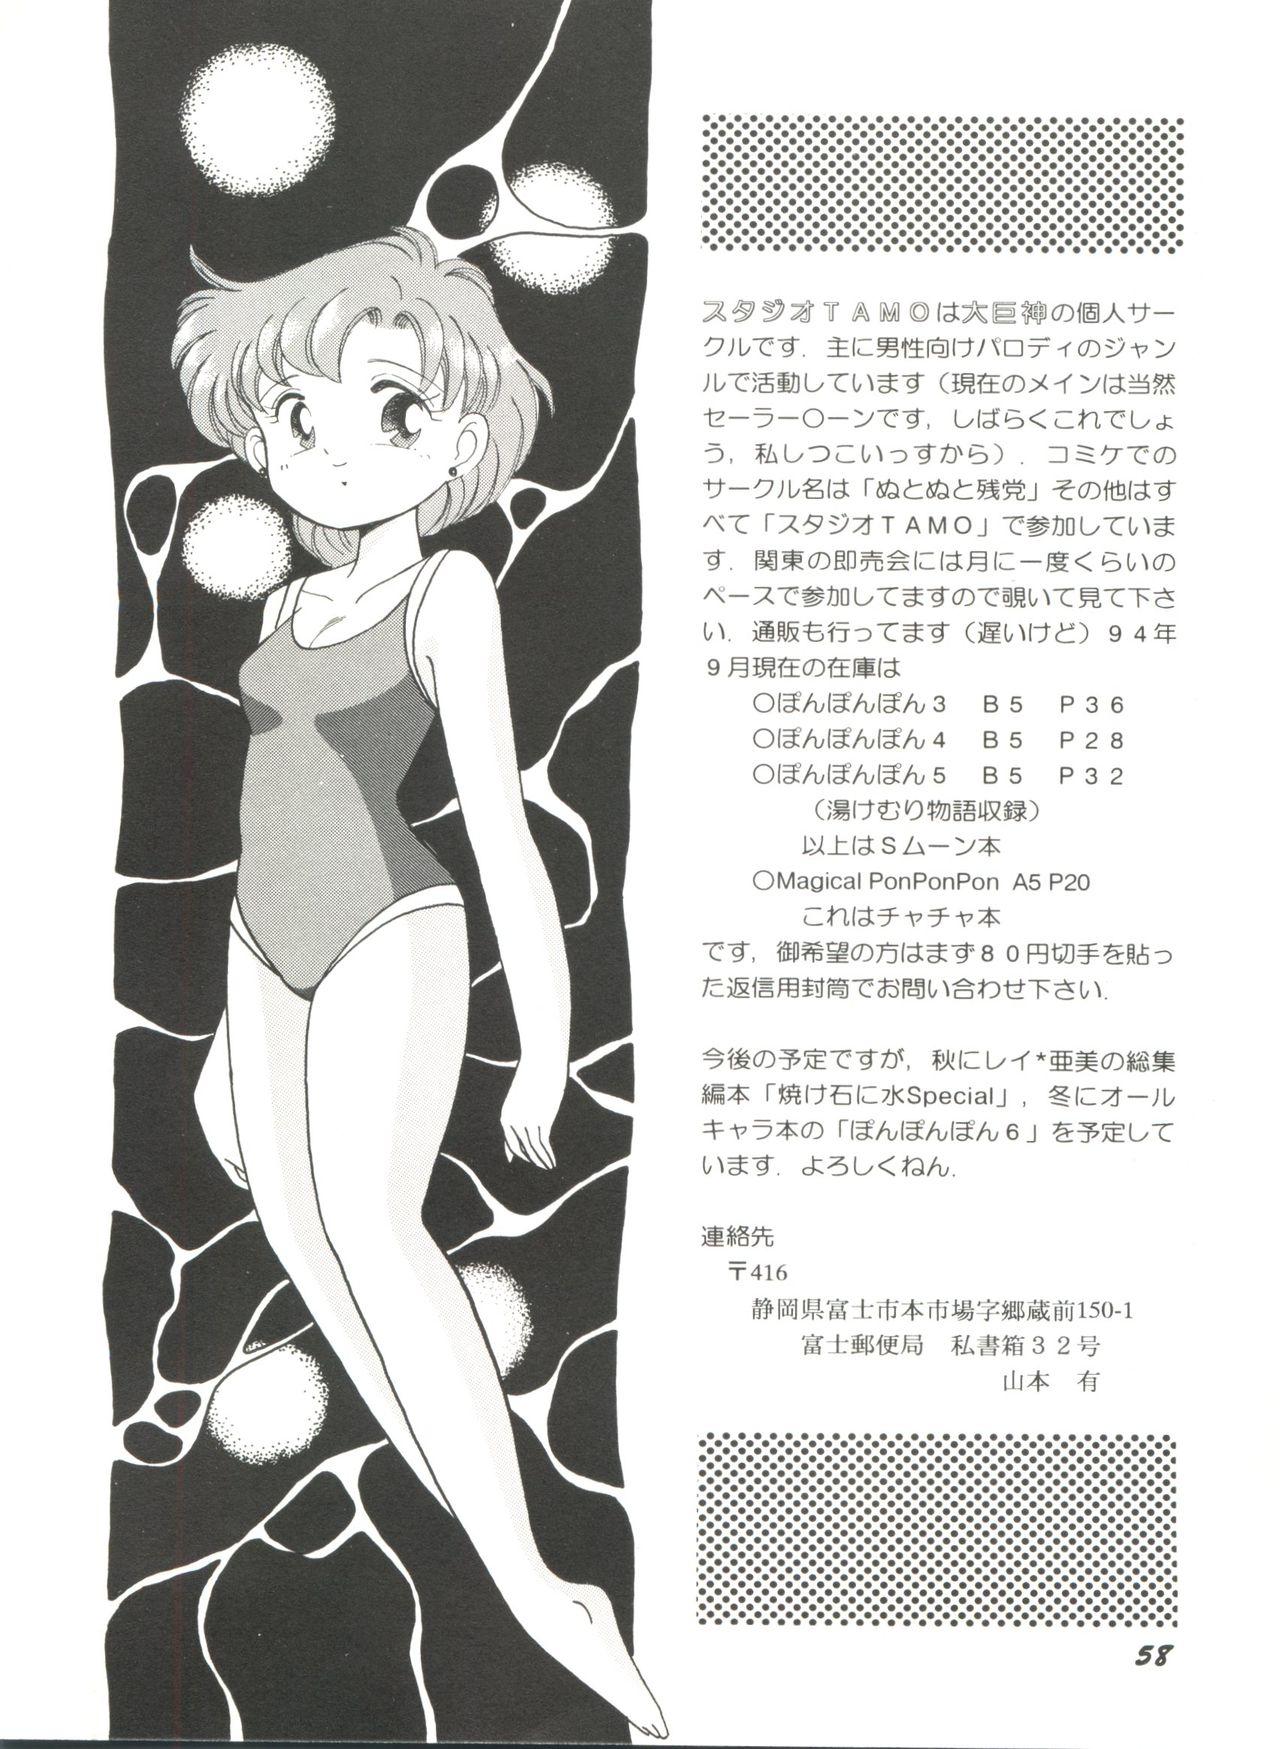 Bishoujo Doujinshi Anthology 5 - Moon Paradise 3 Tsuki no Rakuen 60